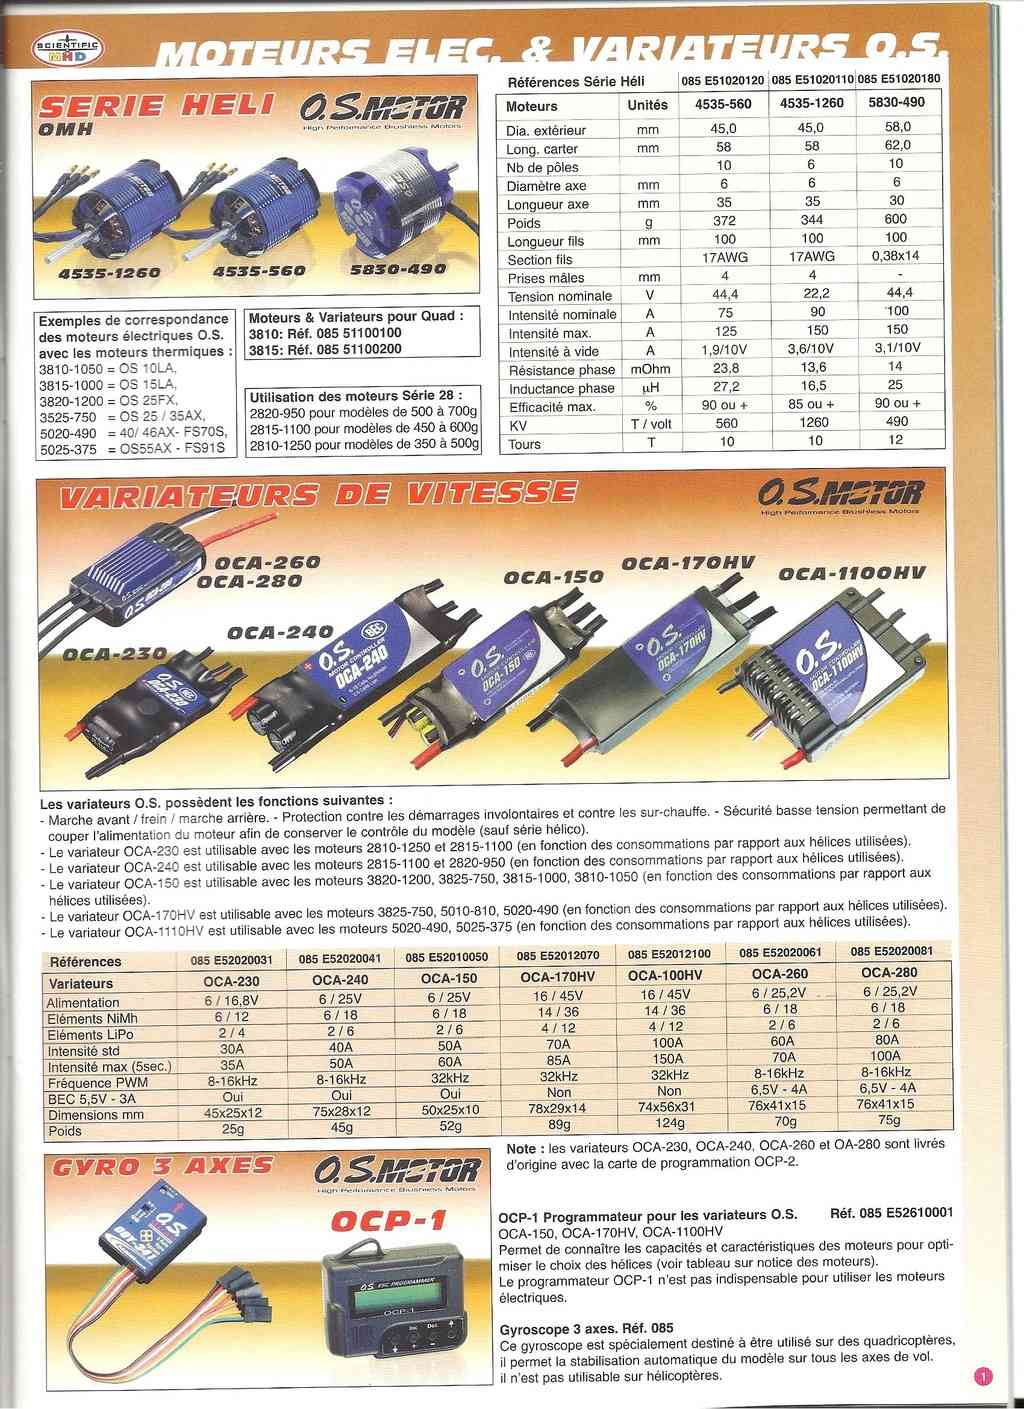 [SCIENTIFIC MHD 2015] Catalogue moteurs & accessoires 2015 Scient75